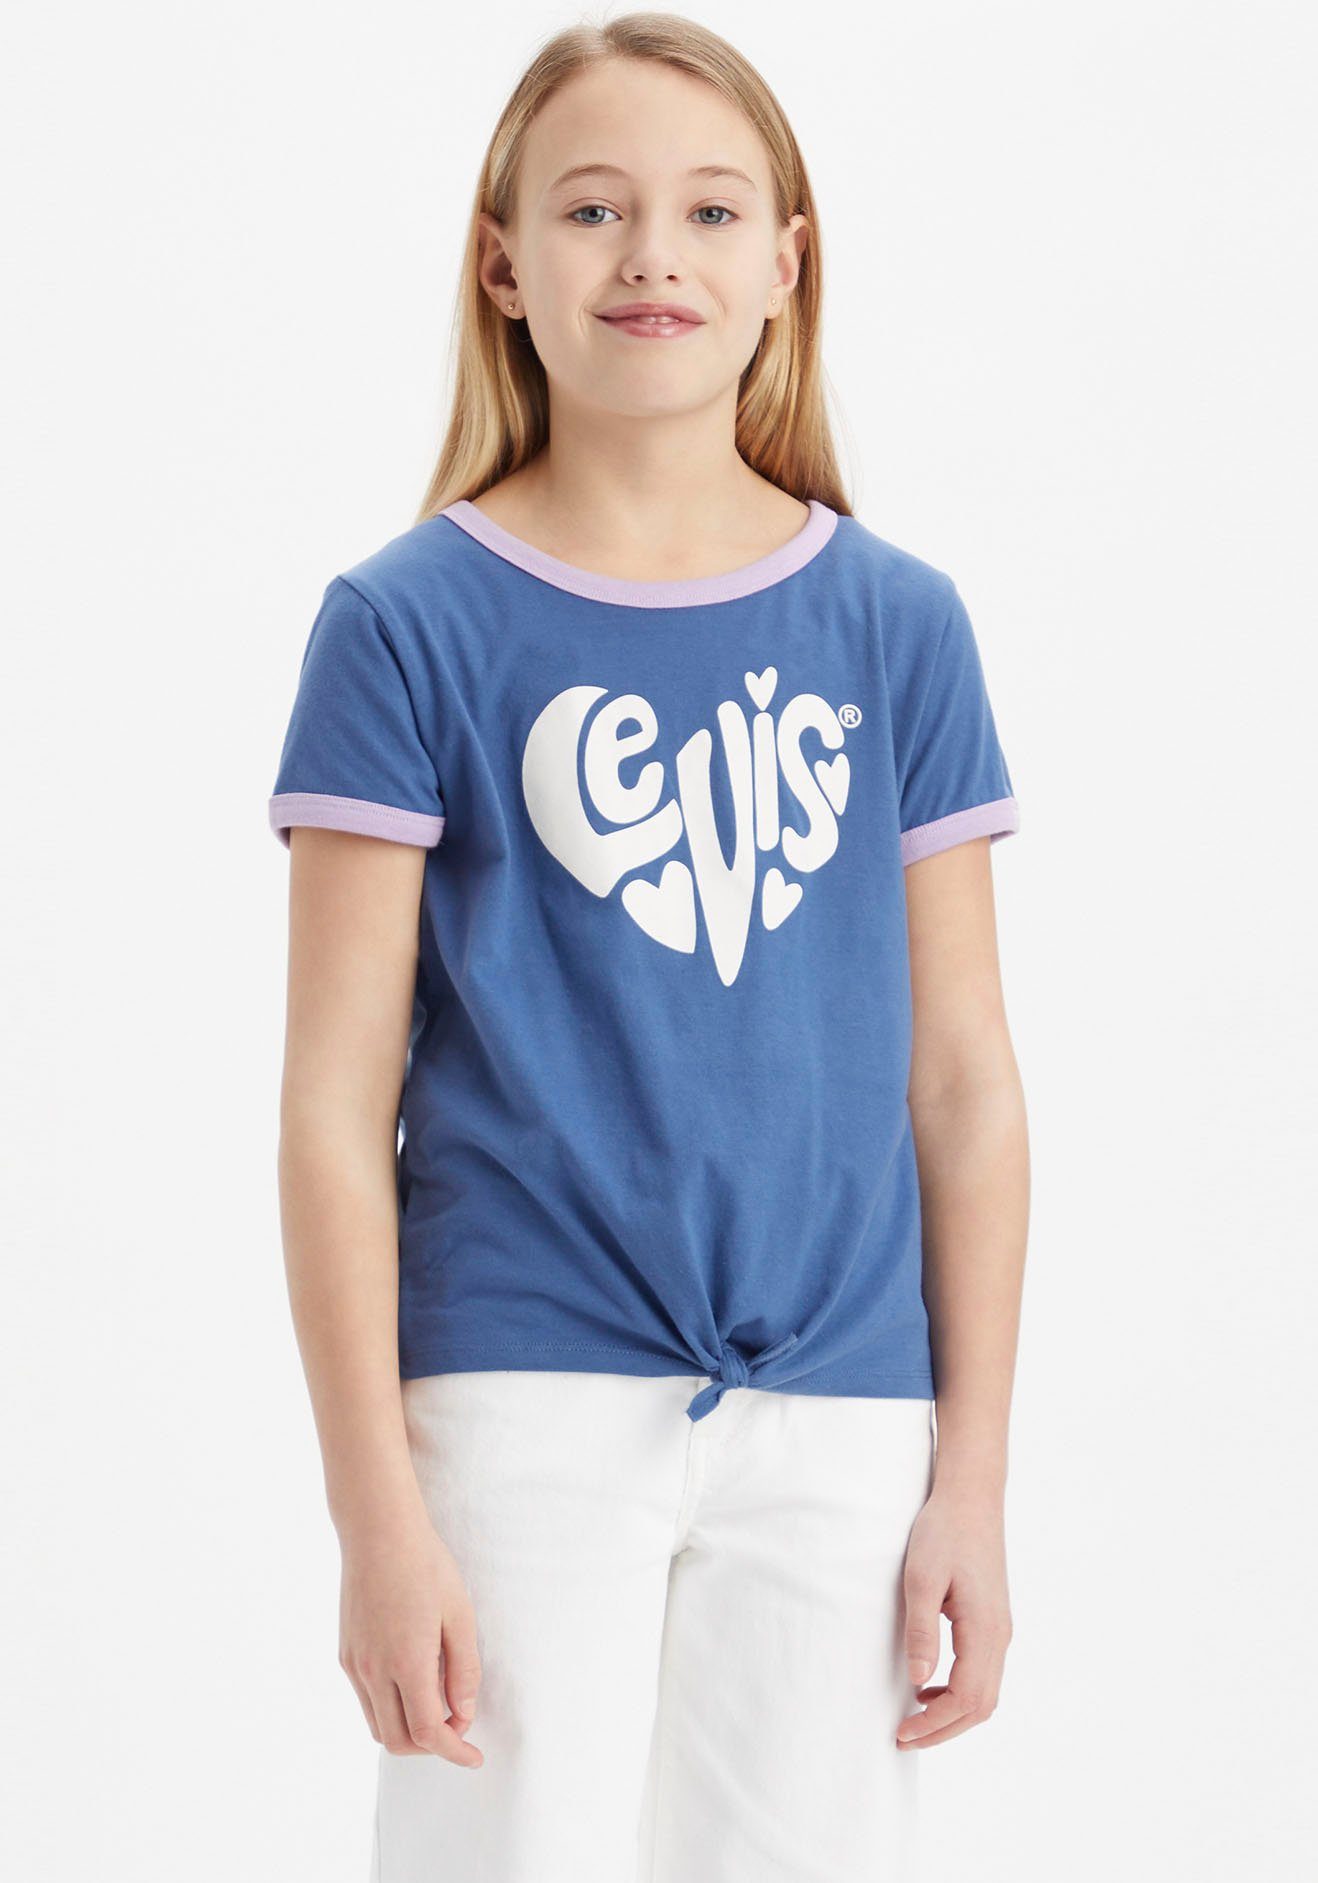 LEVIS HEART TEE Kids T-Shirt Levi's® for GIRLS